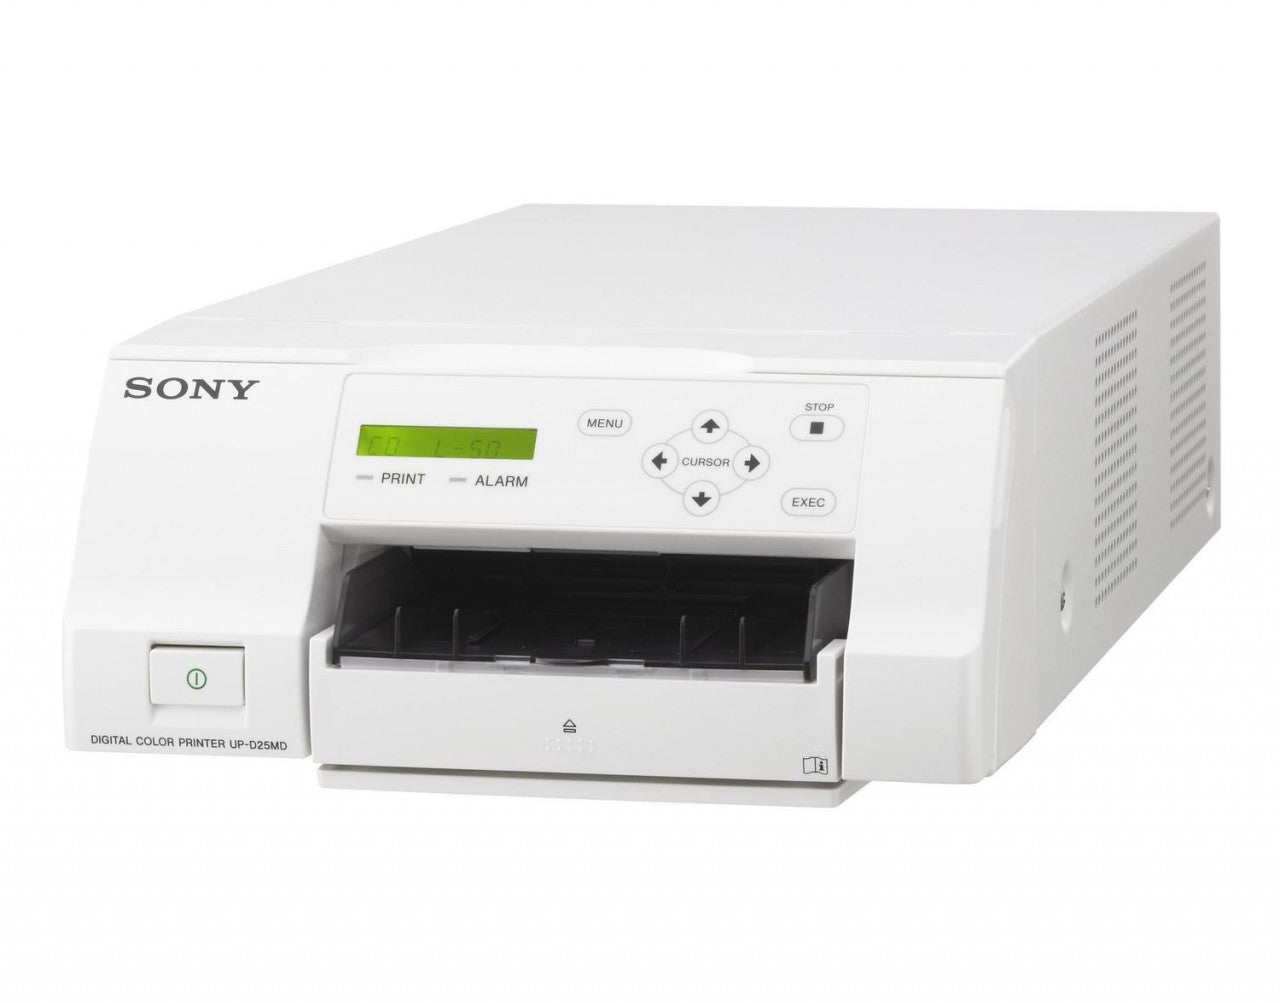 Sony UP-D25MD Color Digital Printer